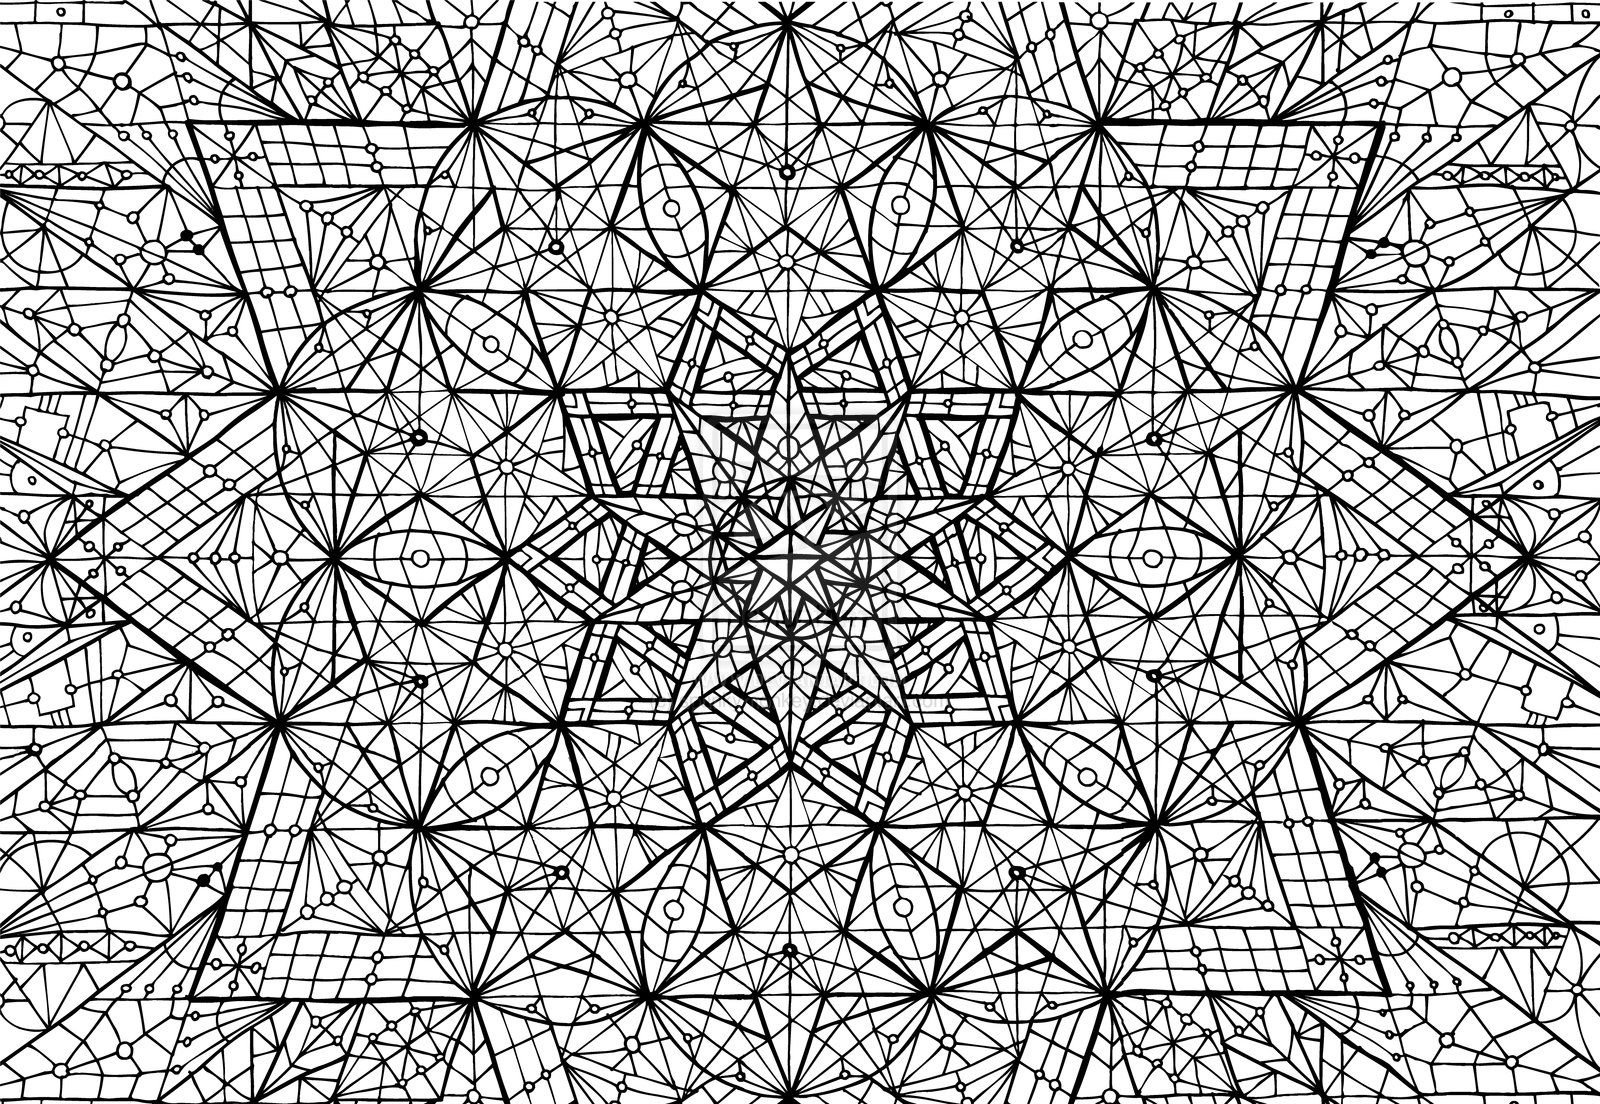 Stunning geometric anti-stress patterns